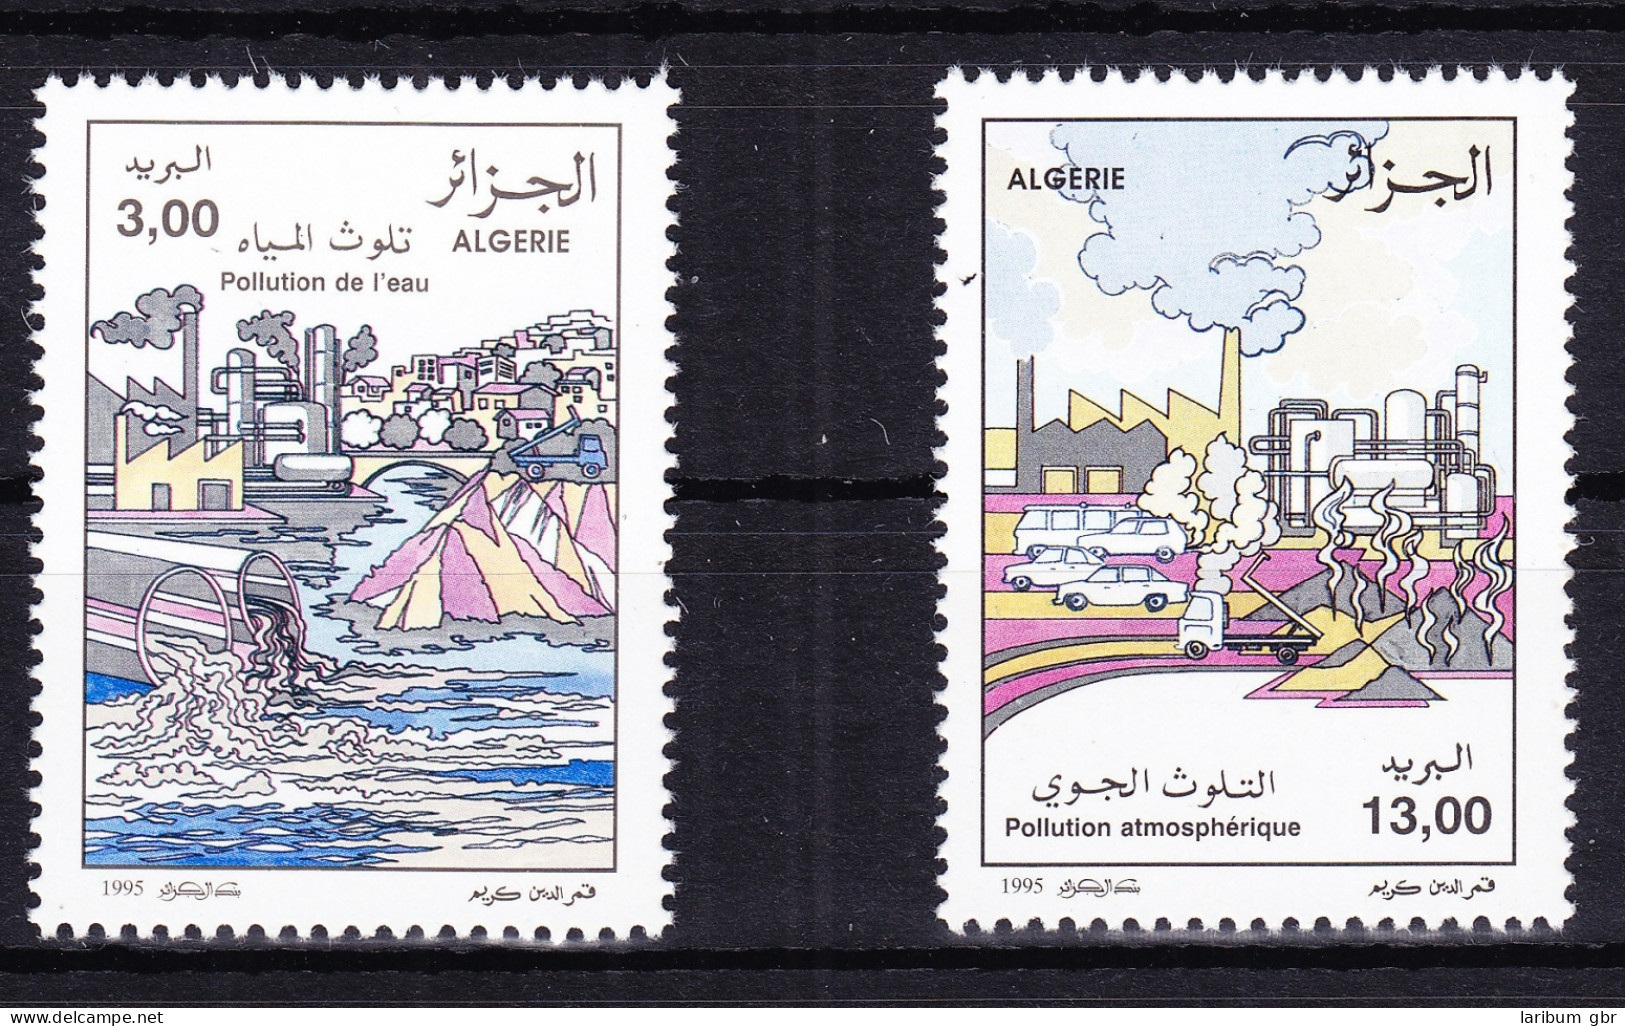 Algerien 1137-1138 Postfrisch Umweltschutz, MNH #RB799 - Argelia (1962-...)